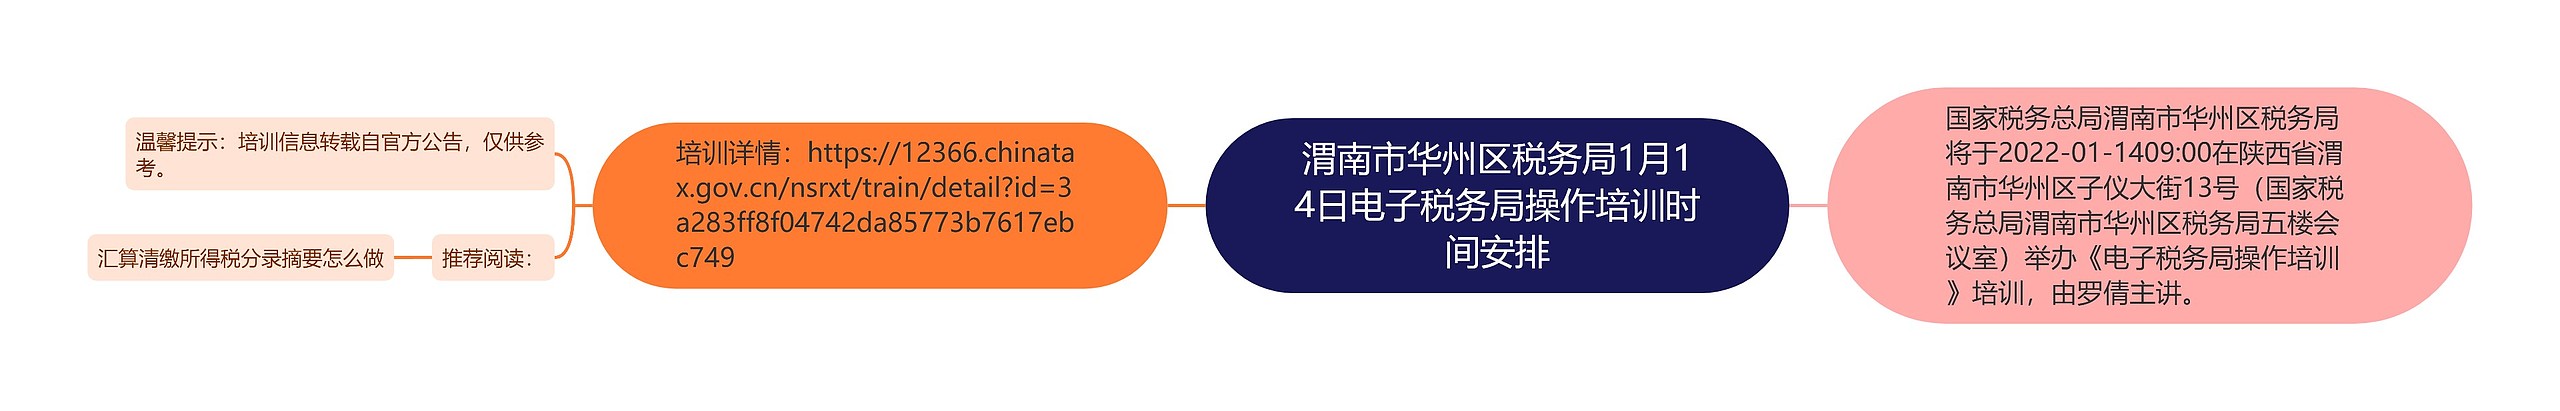 渭南市华州区税务局1月14日电子税务局操作培训时间安排思维导图